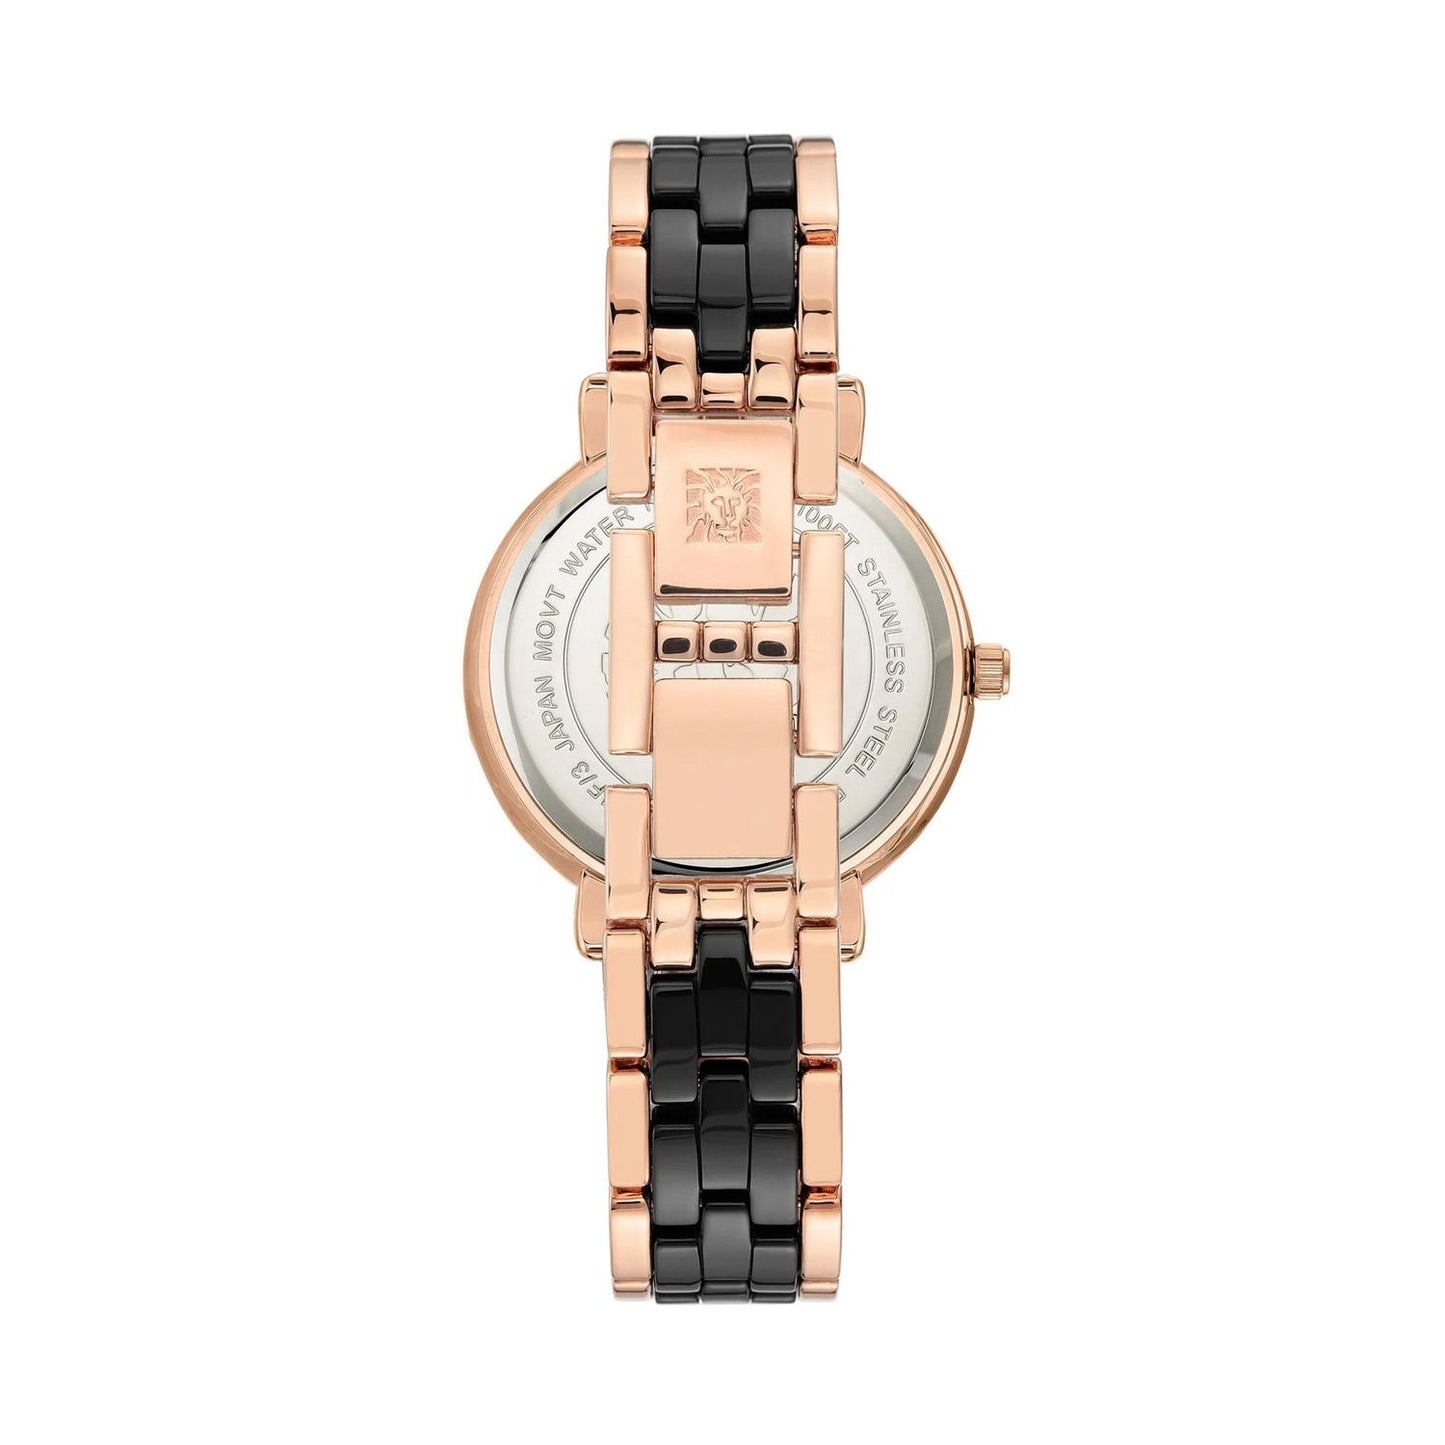 Anne Klein Women's Premium Crystal Accented Ceramic Bracelet Watch W12621